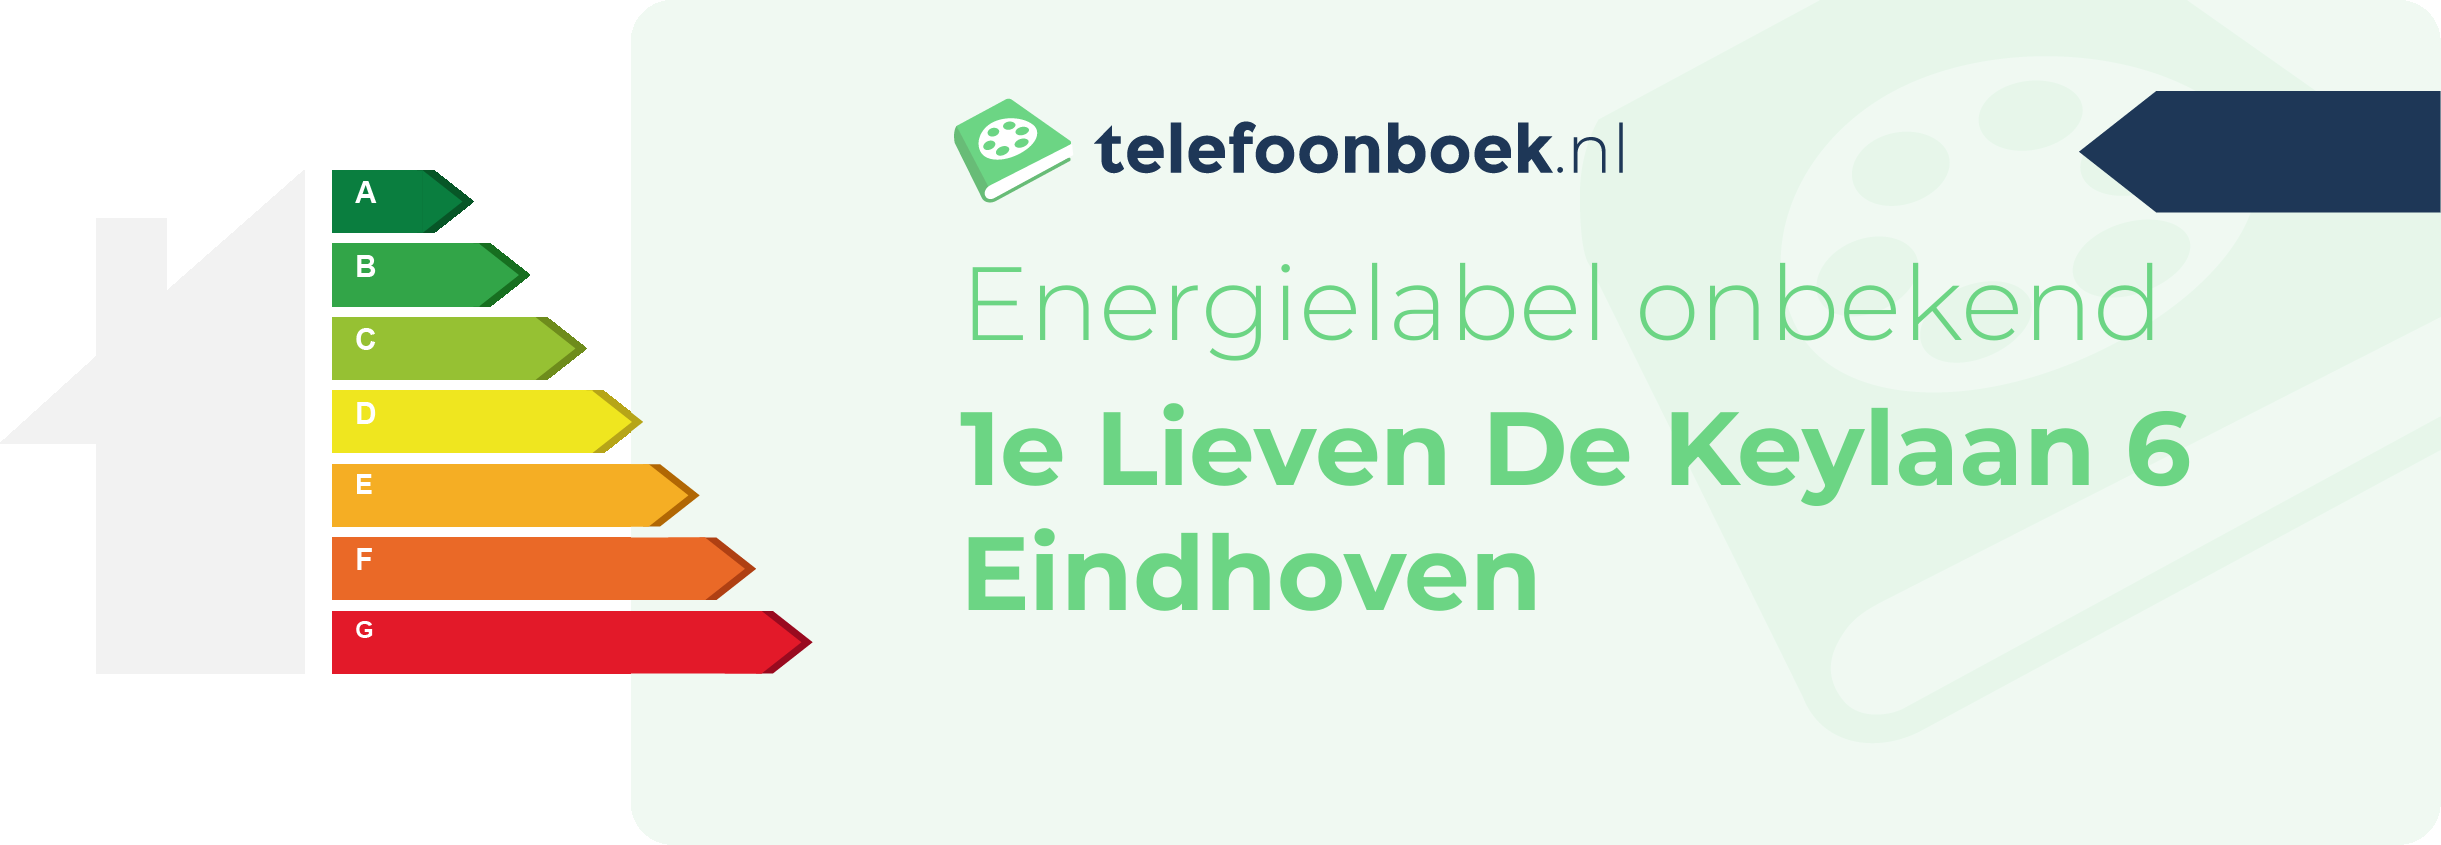 Energielabel 1e Lieven De Keylaan 6 Eindhoven